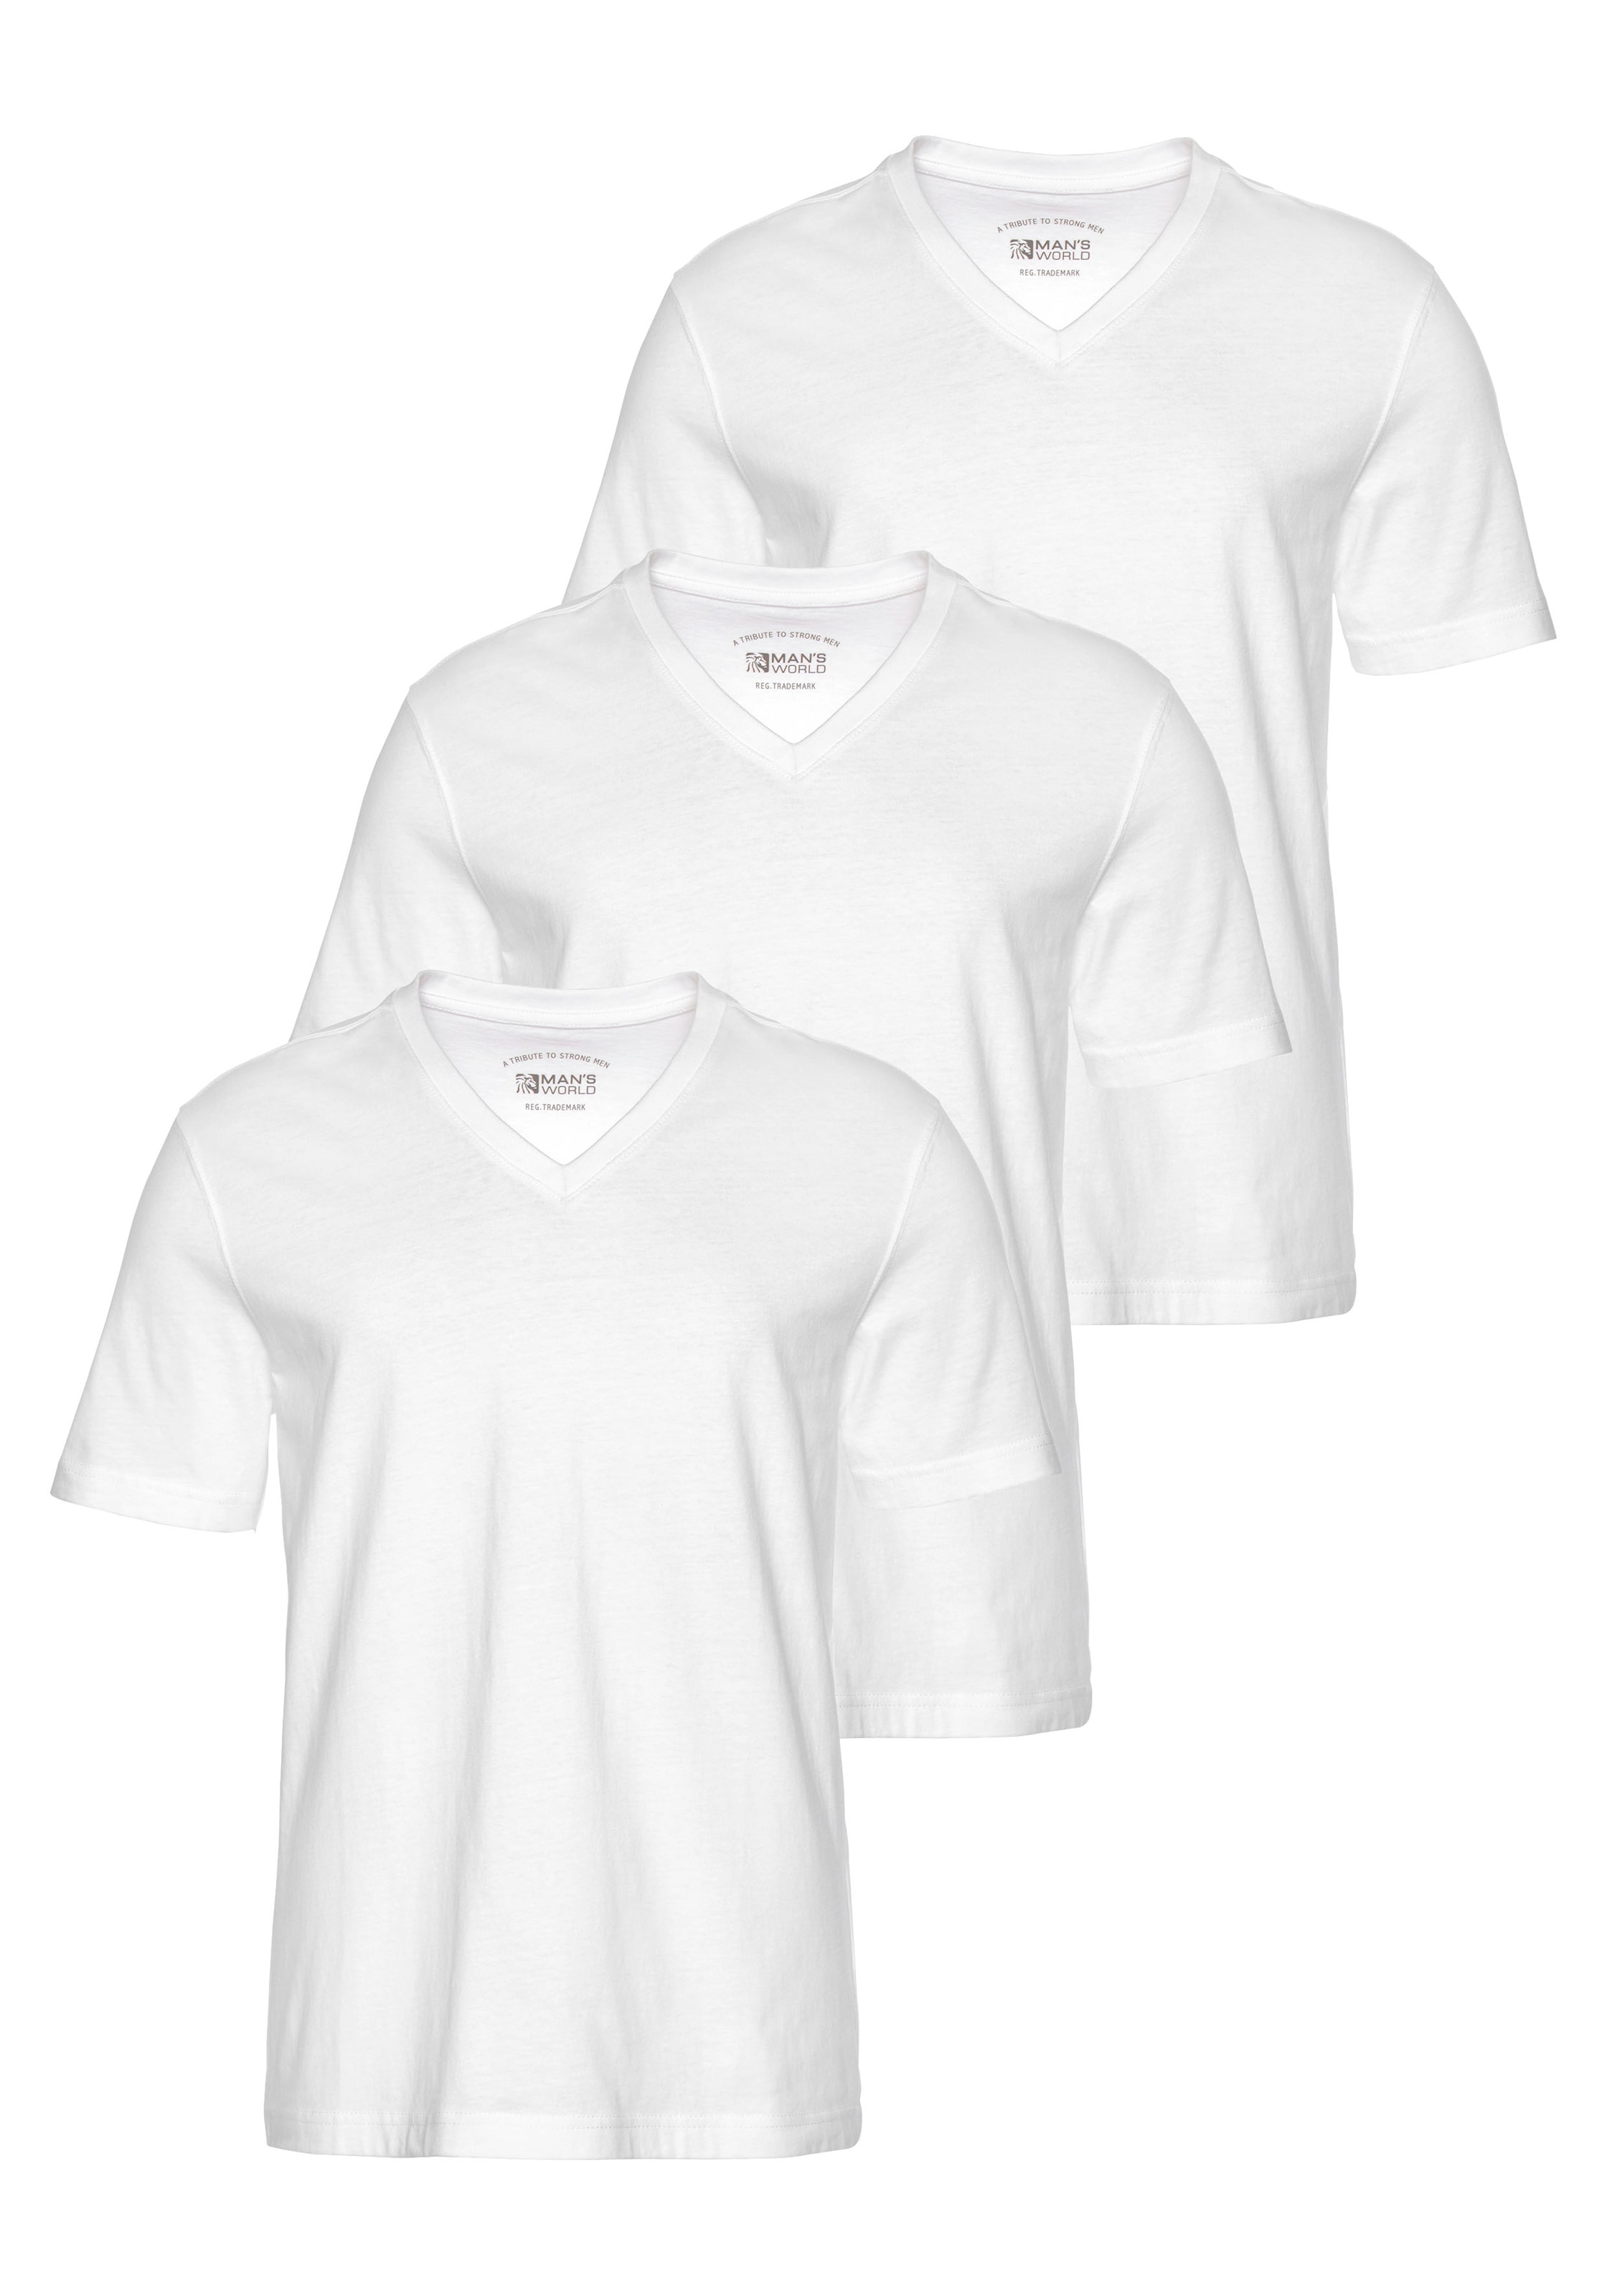 V-Shirt, perfekt als Unterzieh T-shirt